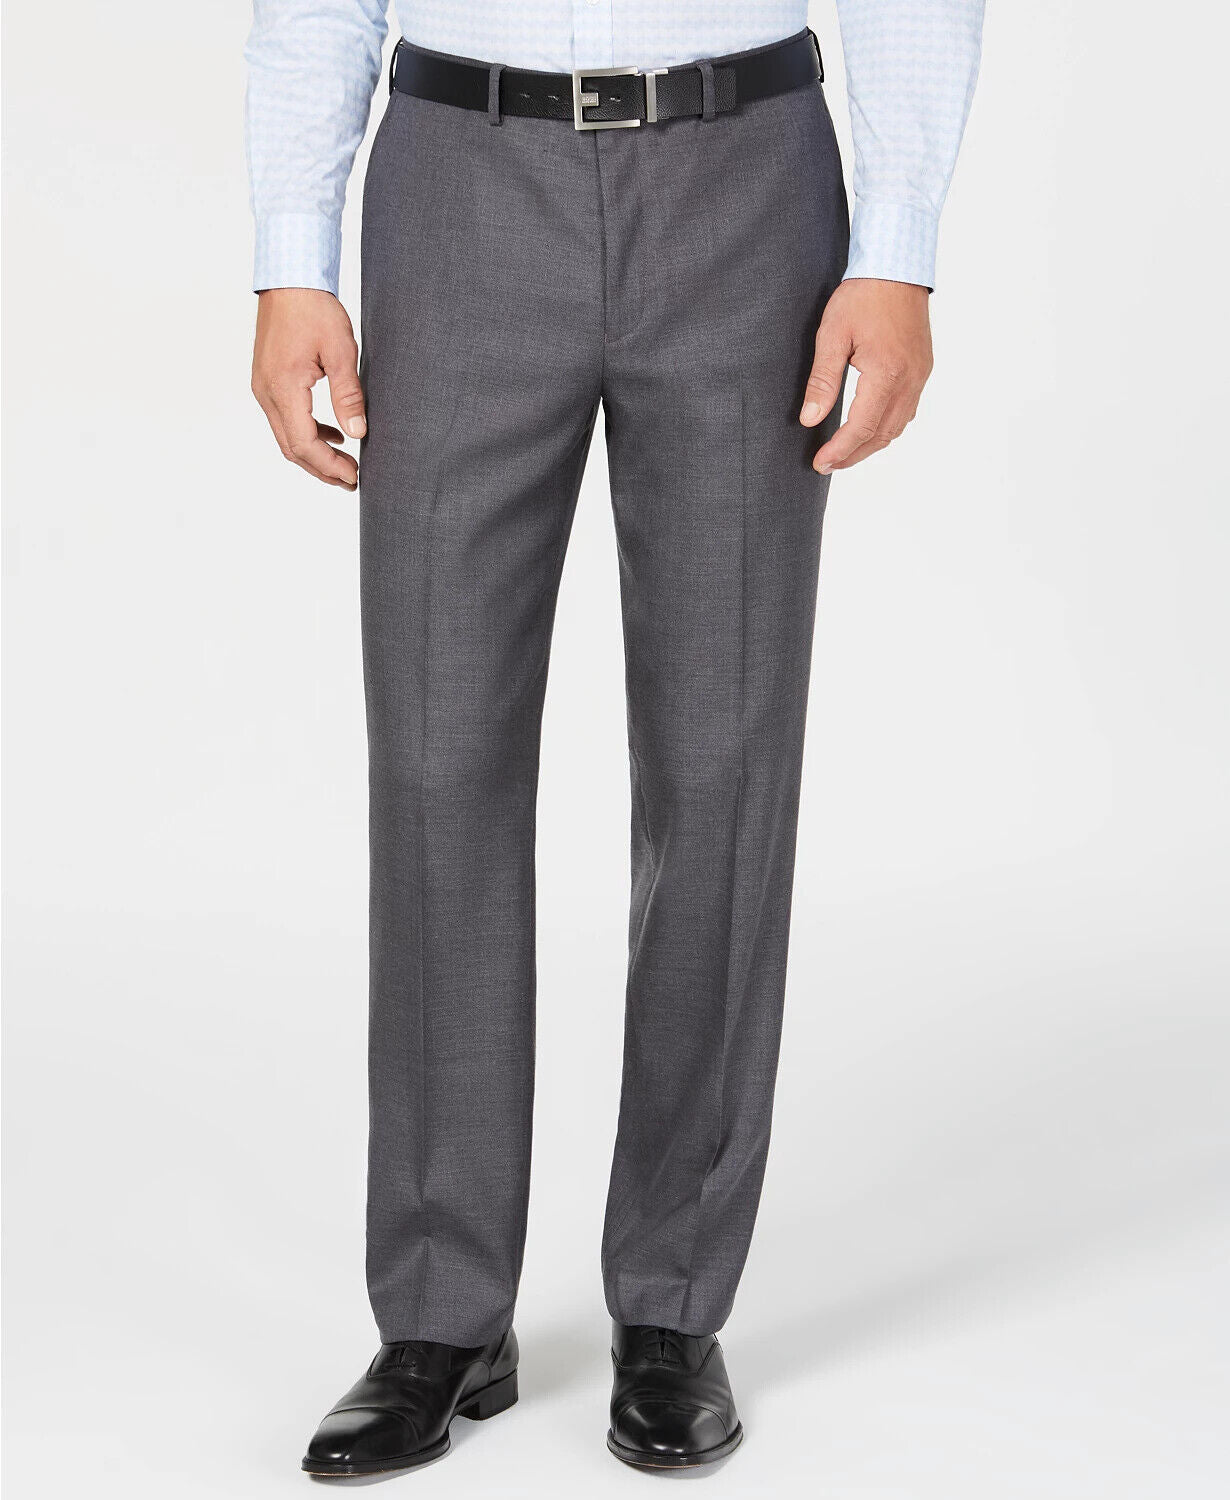 Andrew Marc Suit Pants MSRP $148 Size 31W/32L # 30A 317 NEW